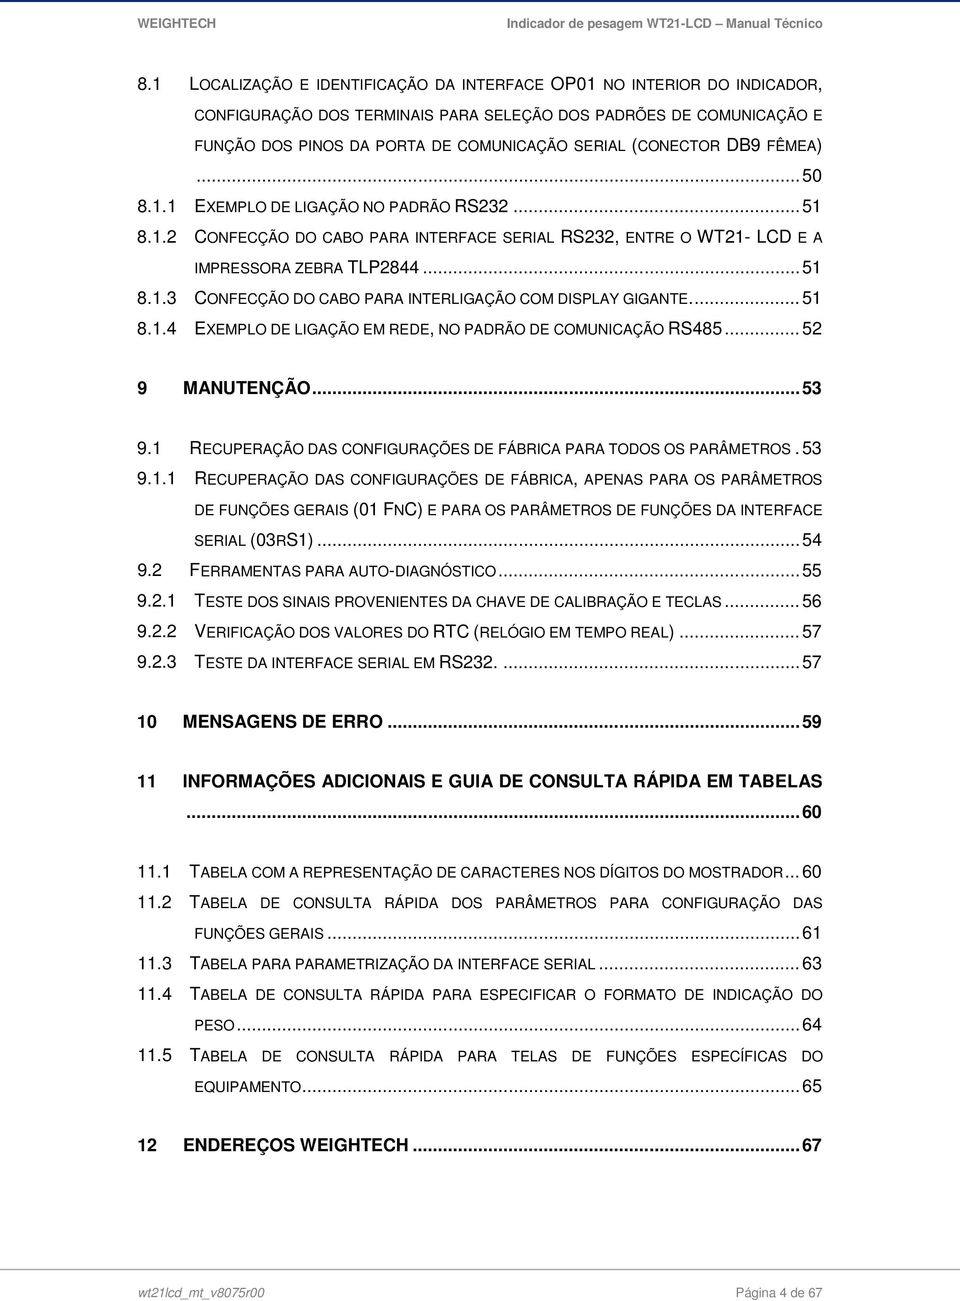 ... 51 8.1.4 EXEMPLO DE LIGAÇÃO EM REDE, NO PADRÃO DE COMUNICAÇÃO RS485... 52 9 MANUTENÇÃO... 53 9.1 RECUPERAÇÃO DAS CONFIGURAÇÕES DE FÁBRICA PARA TODOS OS PARÂMETROS. 53 9.1.1 RECUPERAÇÃO DAS CONFIGURAÇÕES DE FÁBRICA, APENAS PARA OS PARÂMETROS DE FUNÇÕES GERAIS (01 FNC) E PARA OS PARÂMETROS DE FUNÇÕES DA INTERFACE SERIAL (03RS1).